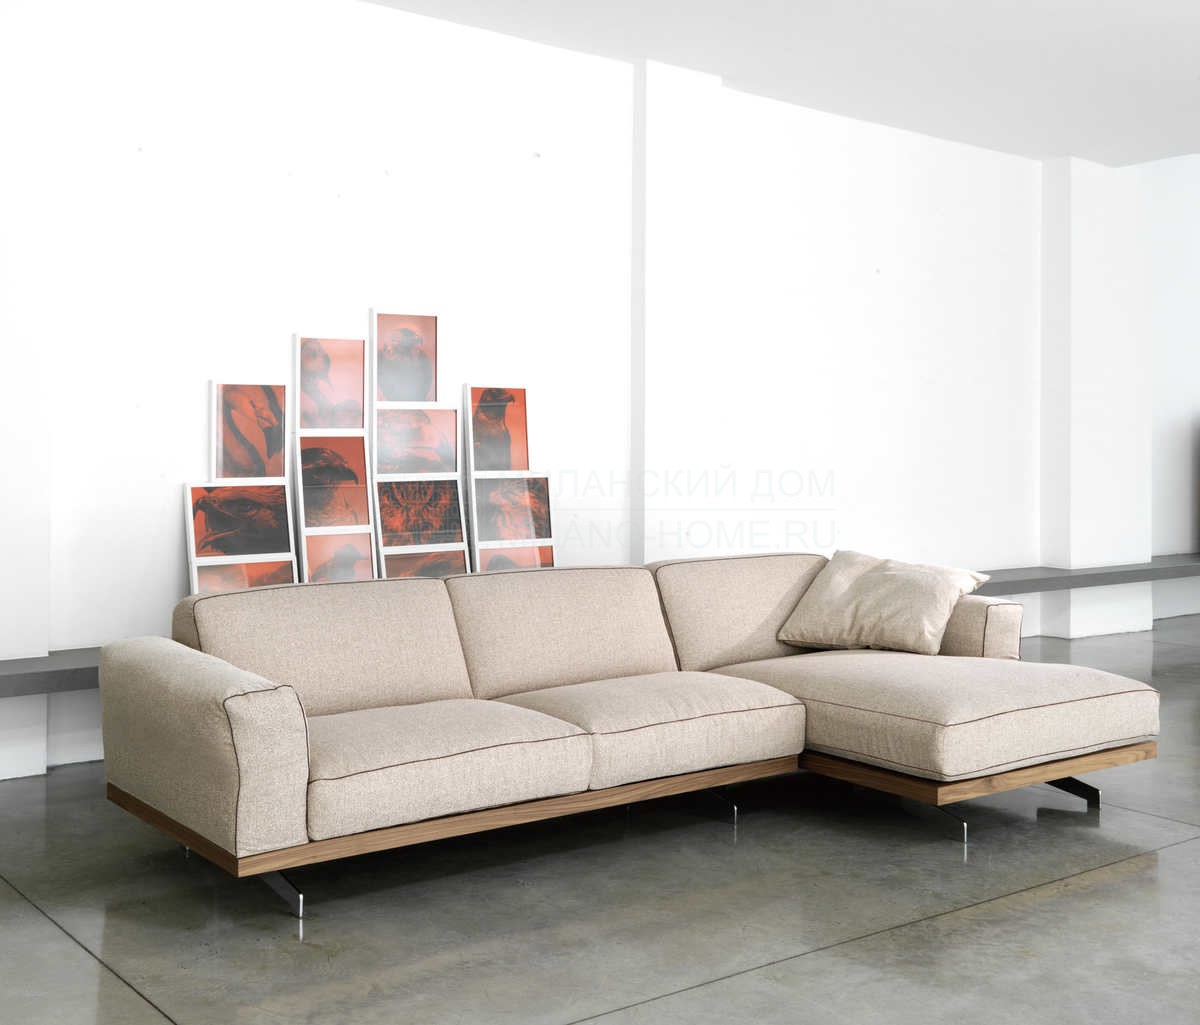 Модульный диван 470_Fancy sofa modular / art.470024 из Италии фабрики VIBIEFFE